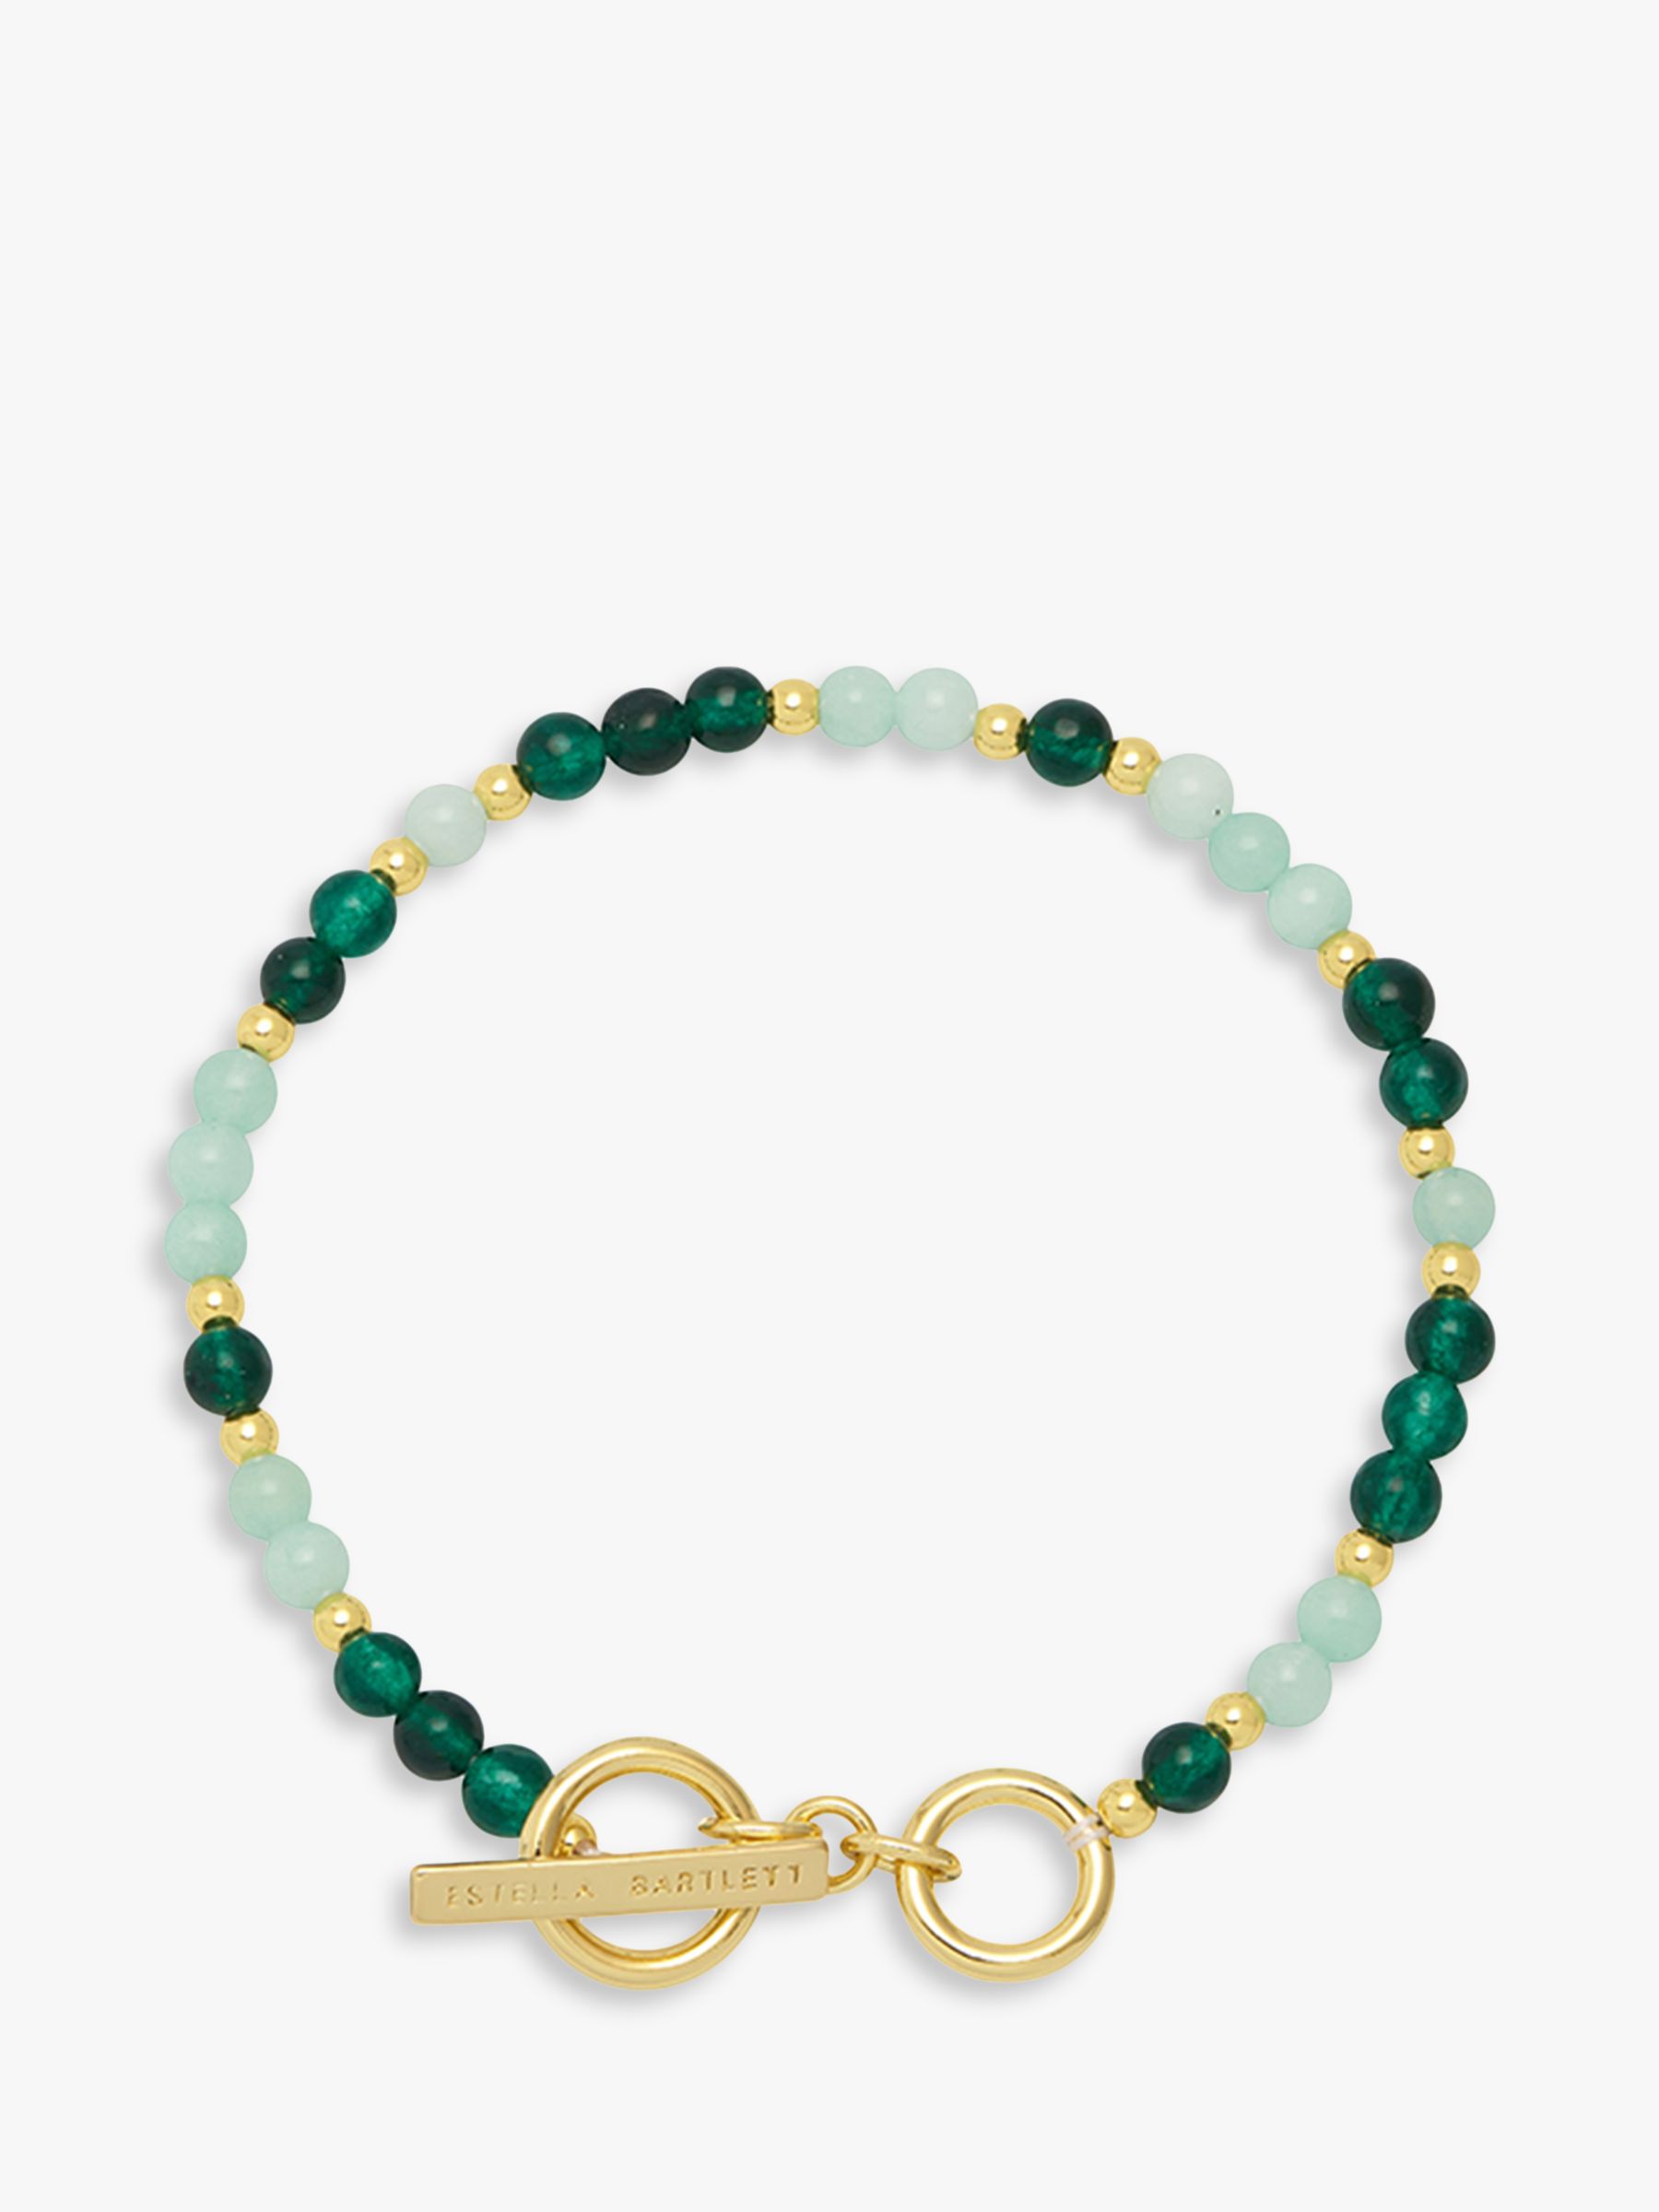 Estella Bartlett Gemstone T-Bar Beaded Bracelet, Gold/Green Agate